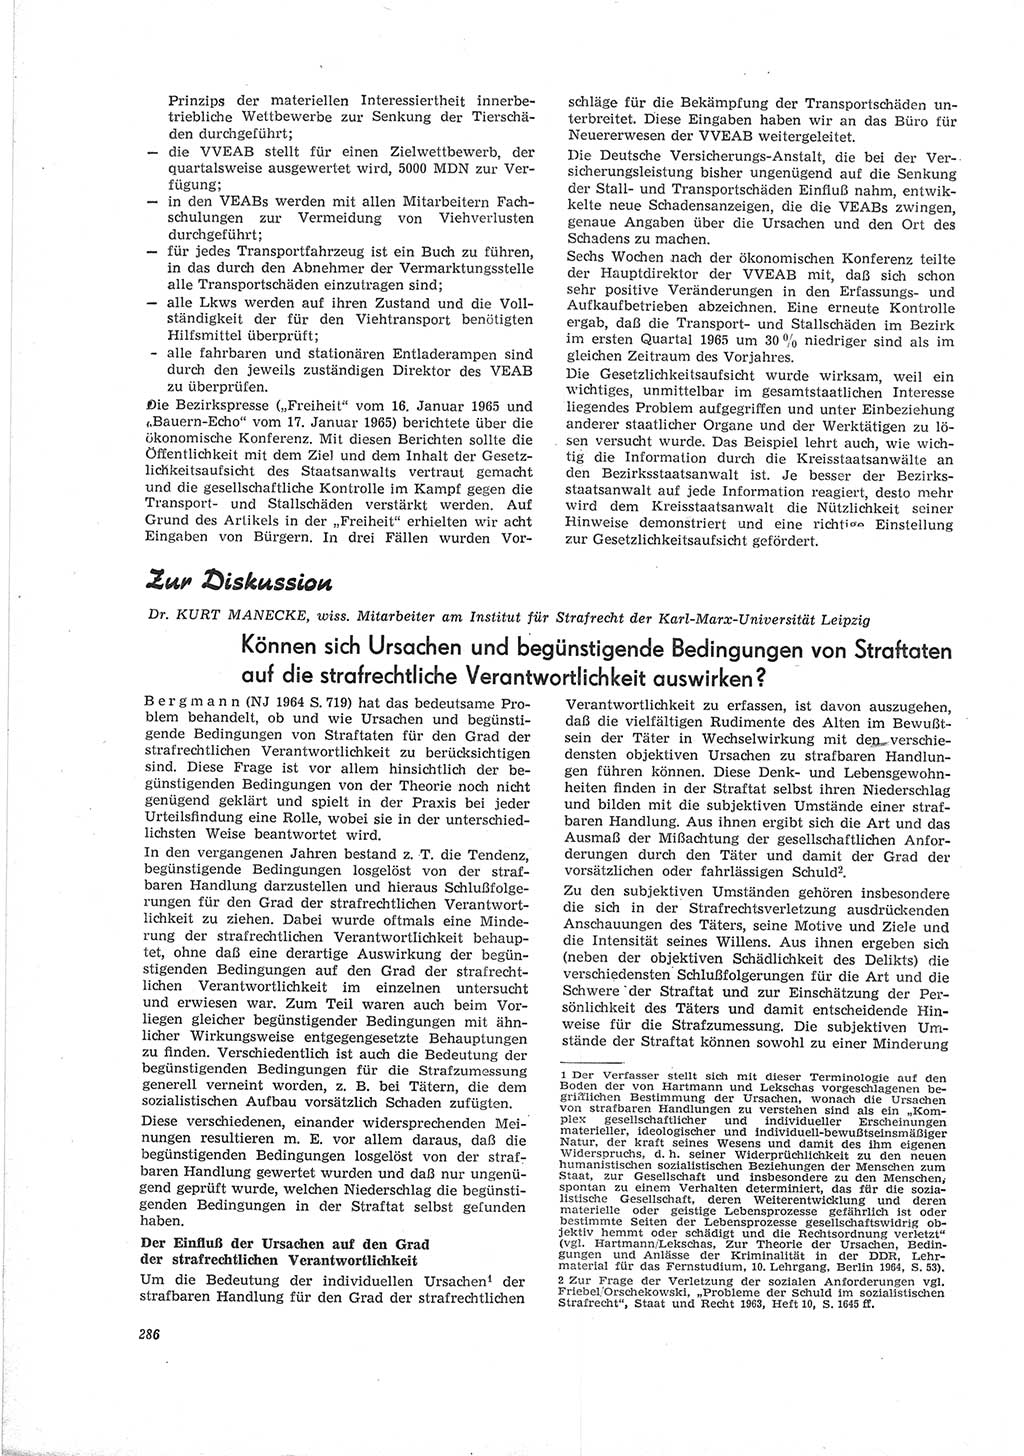 Neue Justiz (NJ), Zeitschrift für Recht und Rechtswissenschaft [Deutsche Demokratische Republik (DDR)], 19. Jahrgang 1965, Seite 286 (NJ DDR 1965, S. 286)